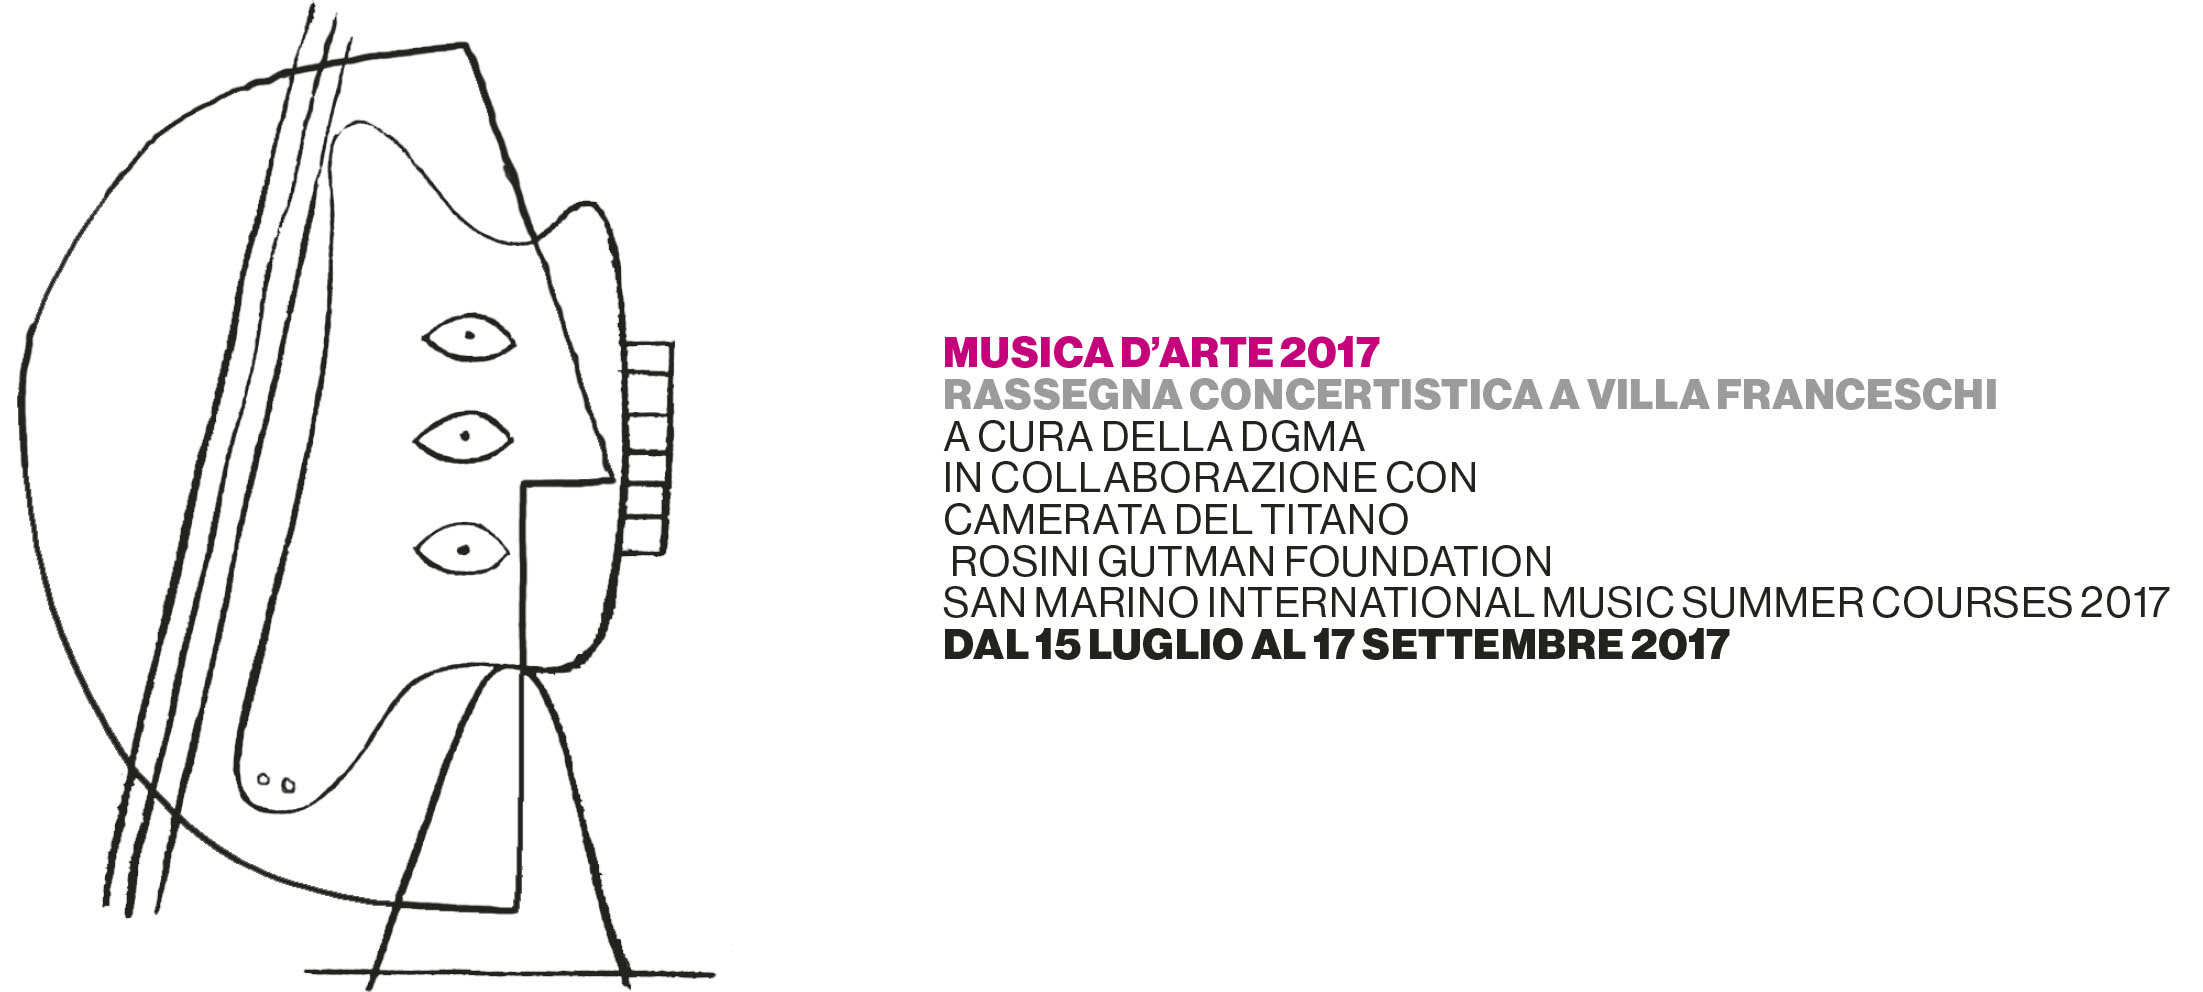 MUSICA D'ARTE 2017 - II° edizione